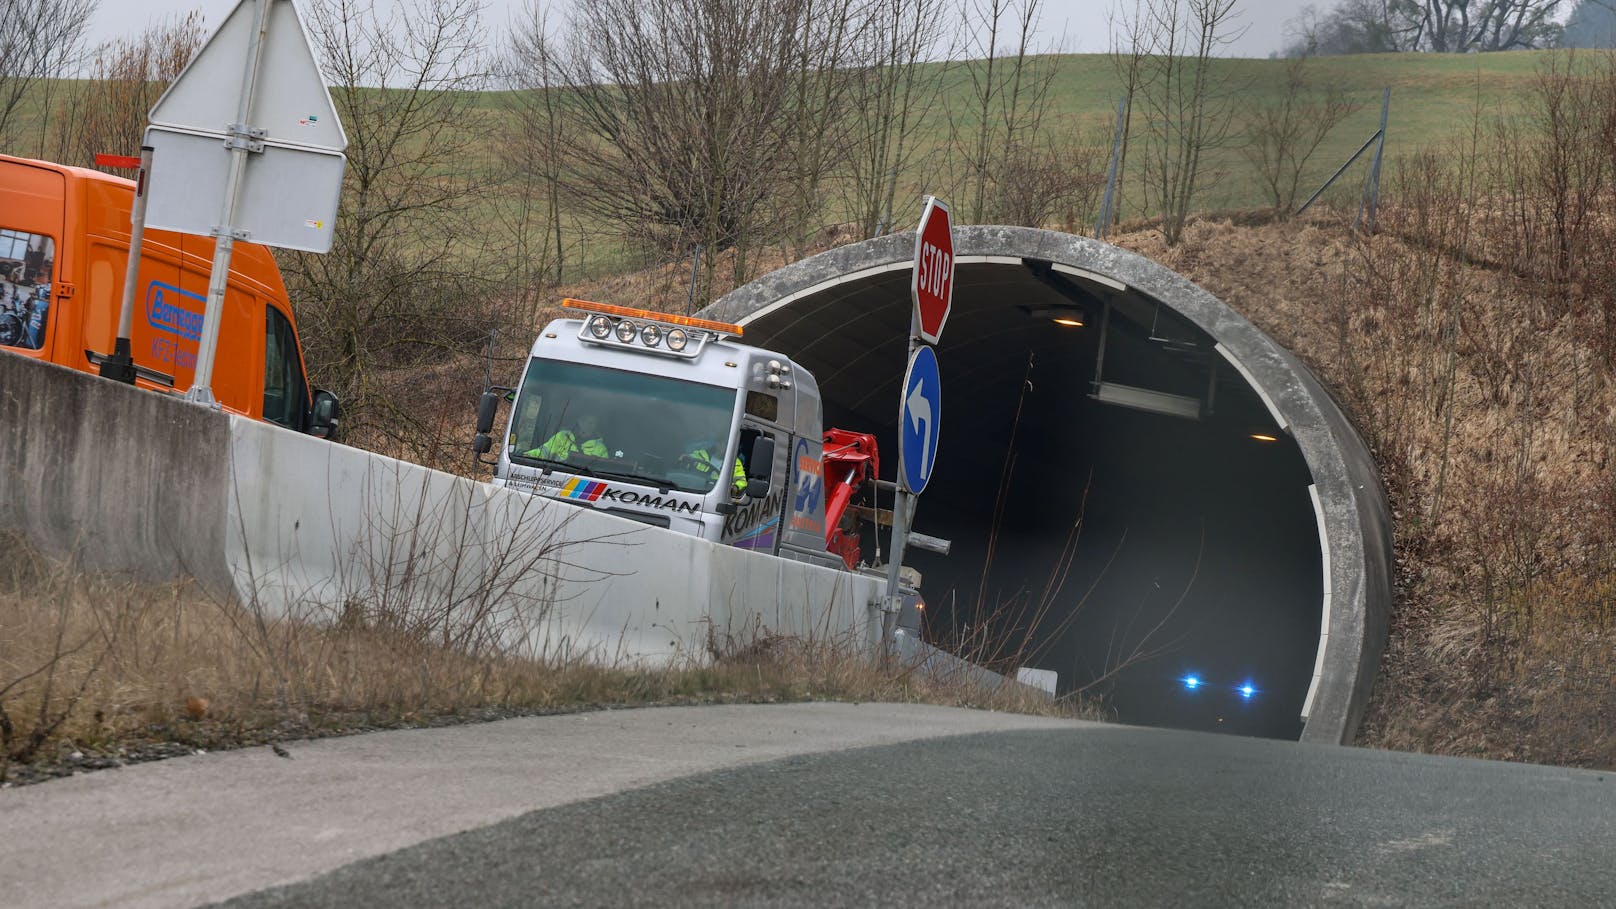 "Lkw brennt" – dramatische Minuten nach Tunnel-Unfall